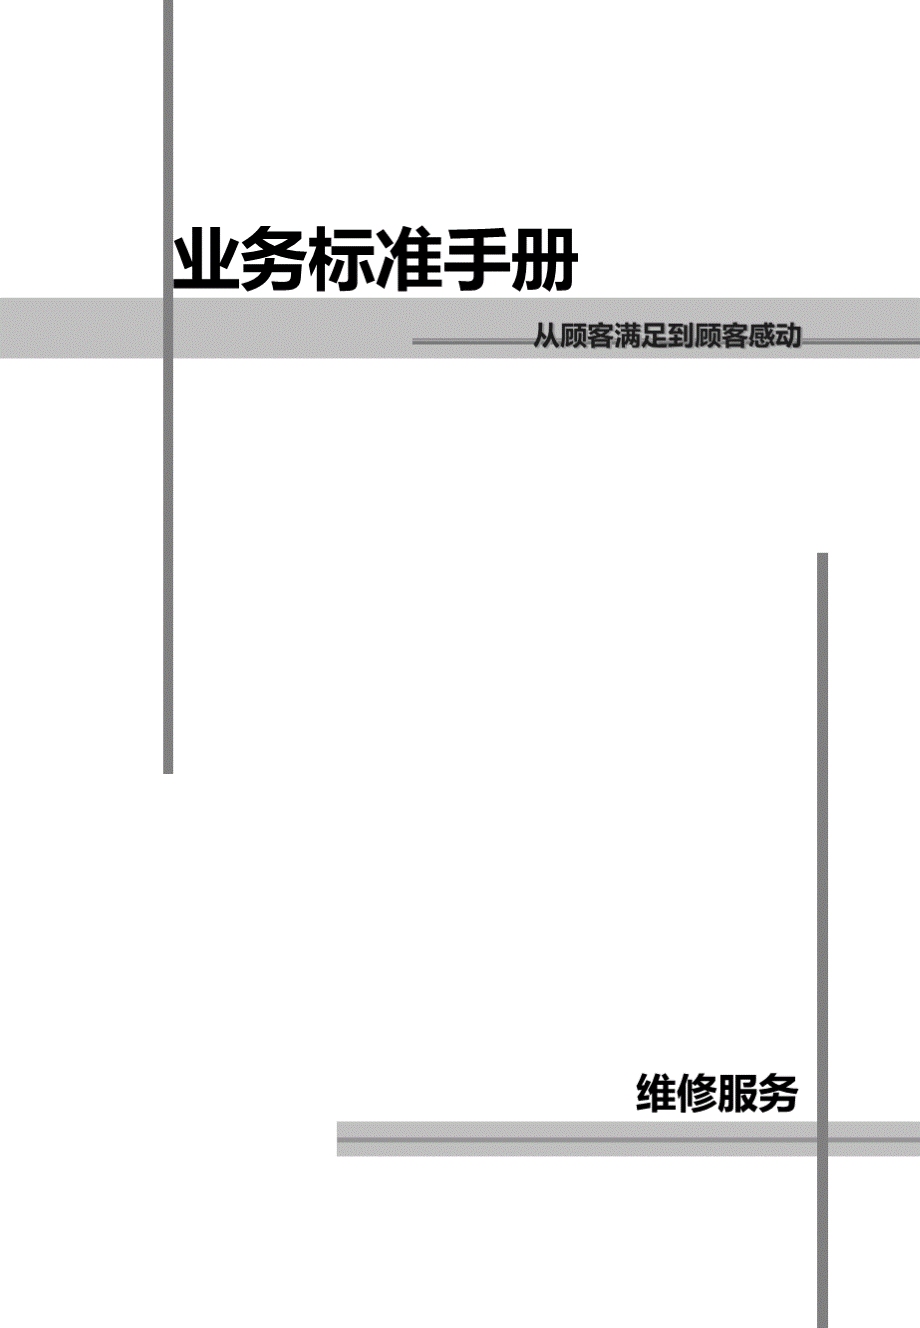 丰田汽车业务标准手册-维修服务标准手册_.ppt